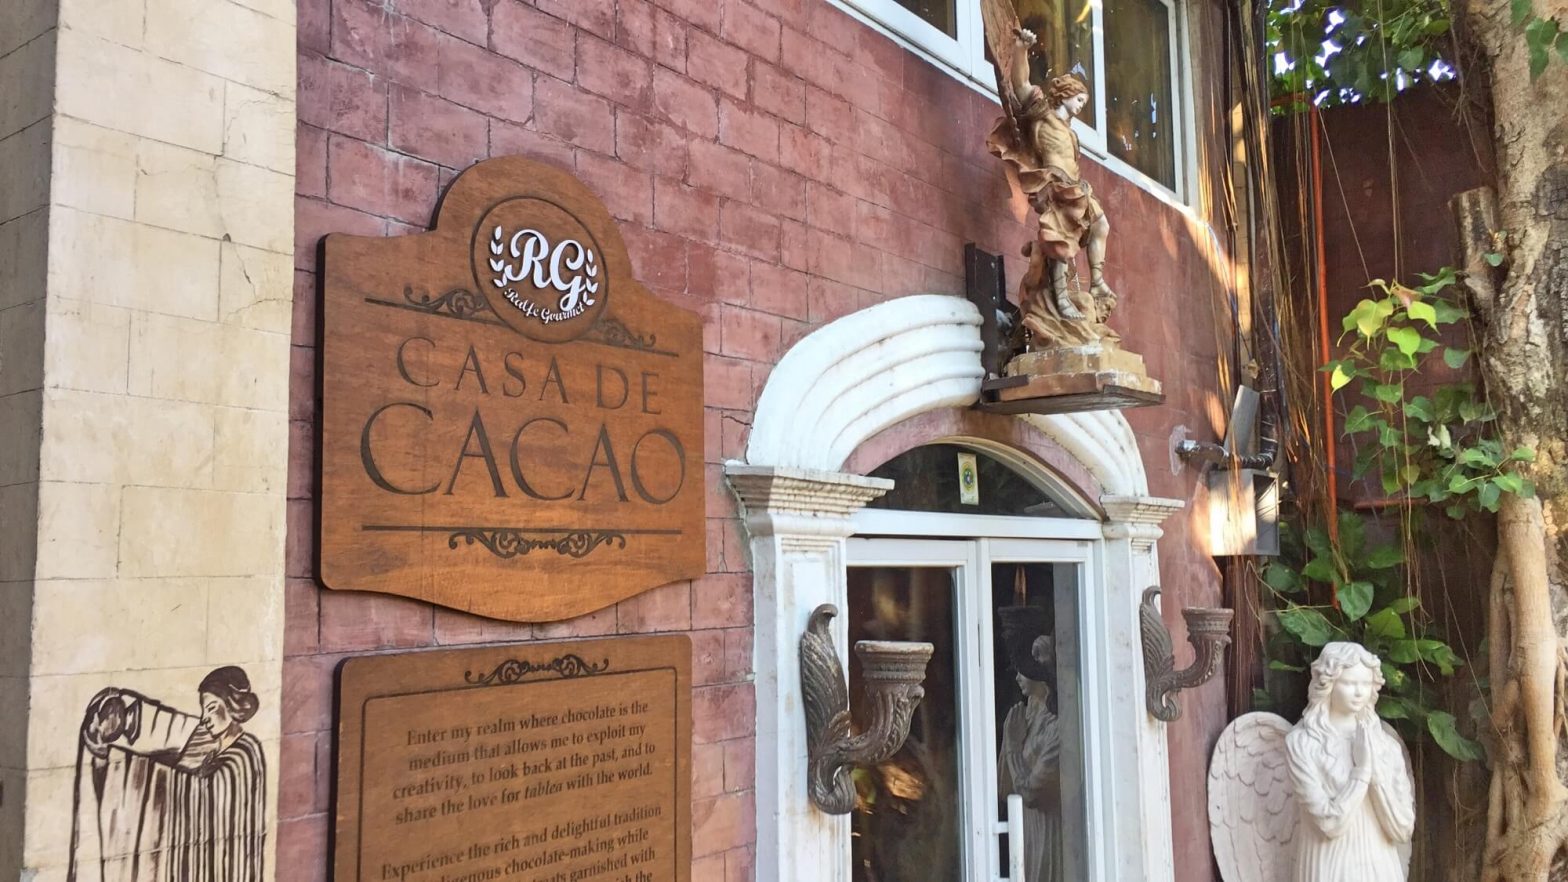 Casa de Cacao offers tablea tales, chocolate indulgence